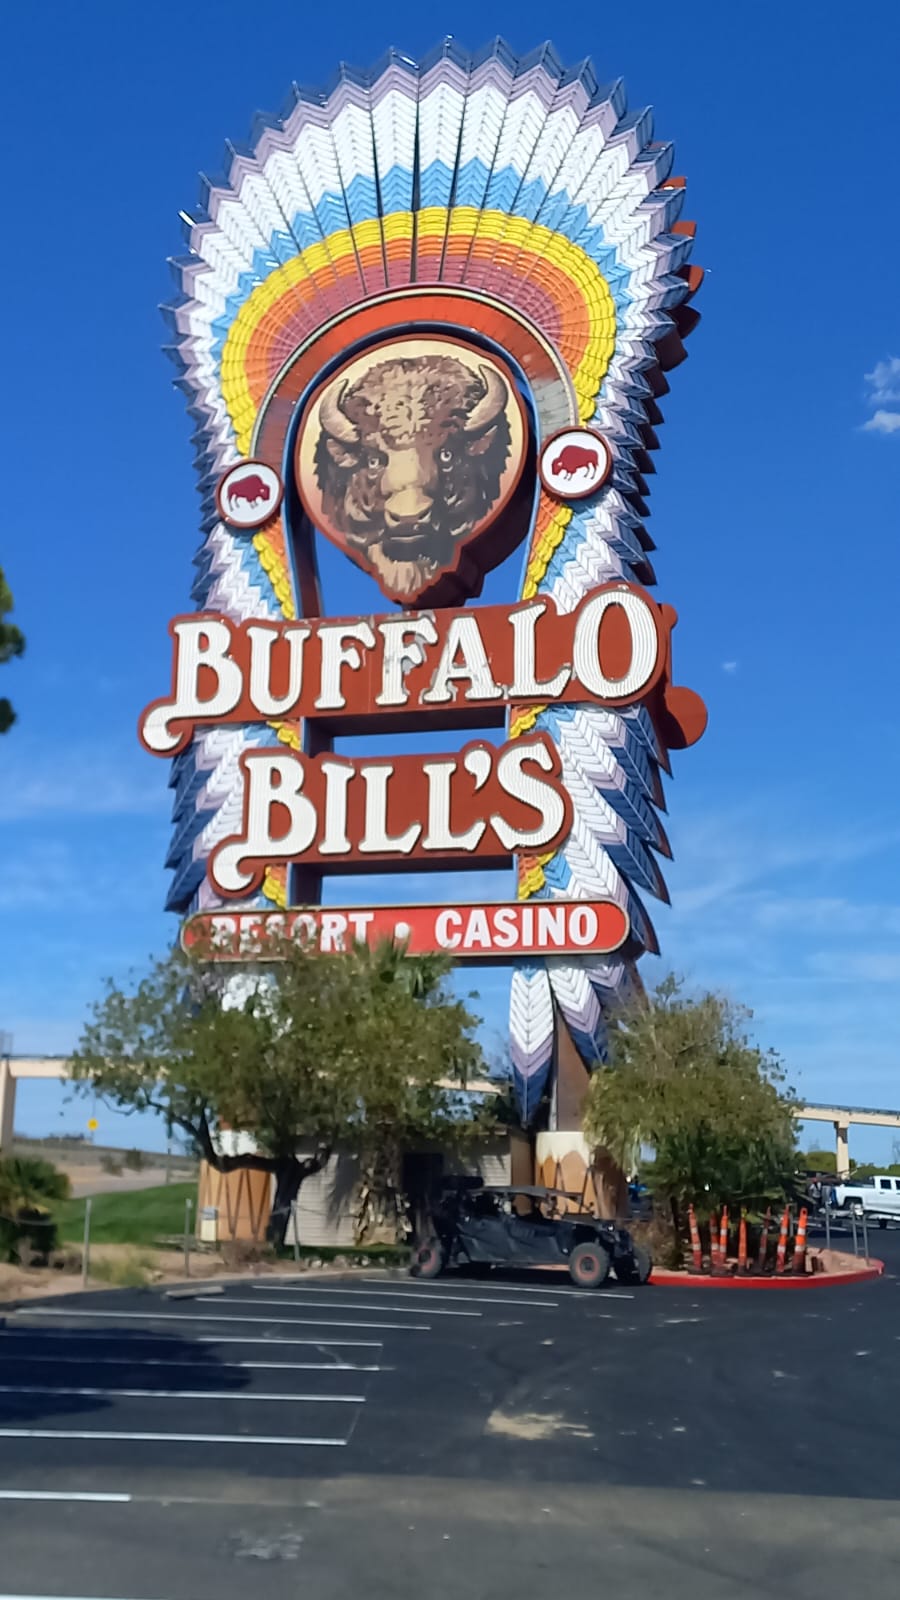 Inside Buffalo Bill's Casino & Resort